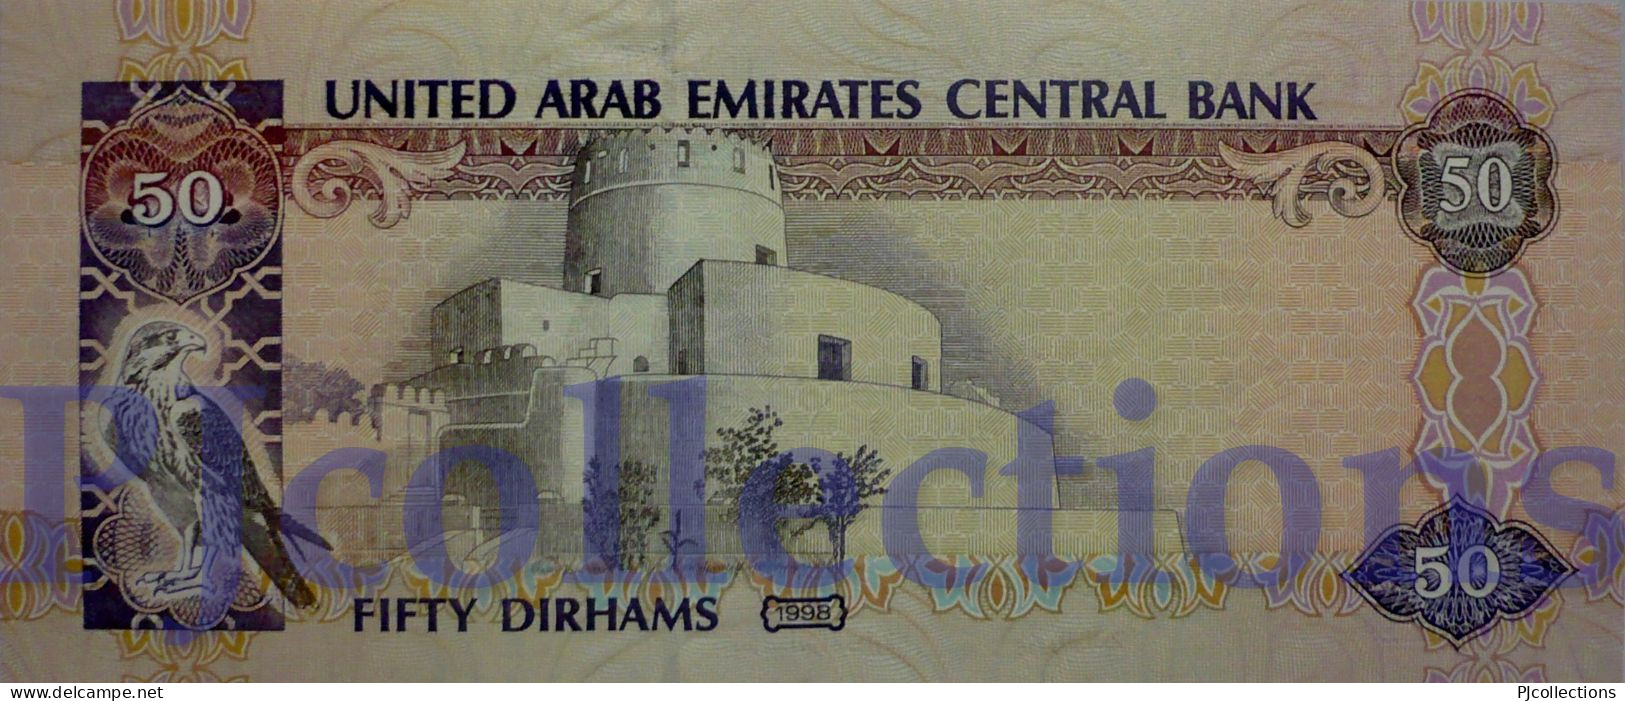 UNITED ARAB EMIRATES 50 DIRHAMS 1998 PICK 22 UNC - United Arab Emirates